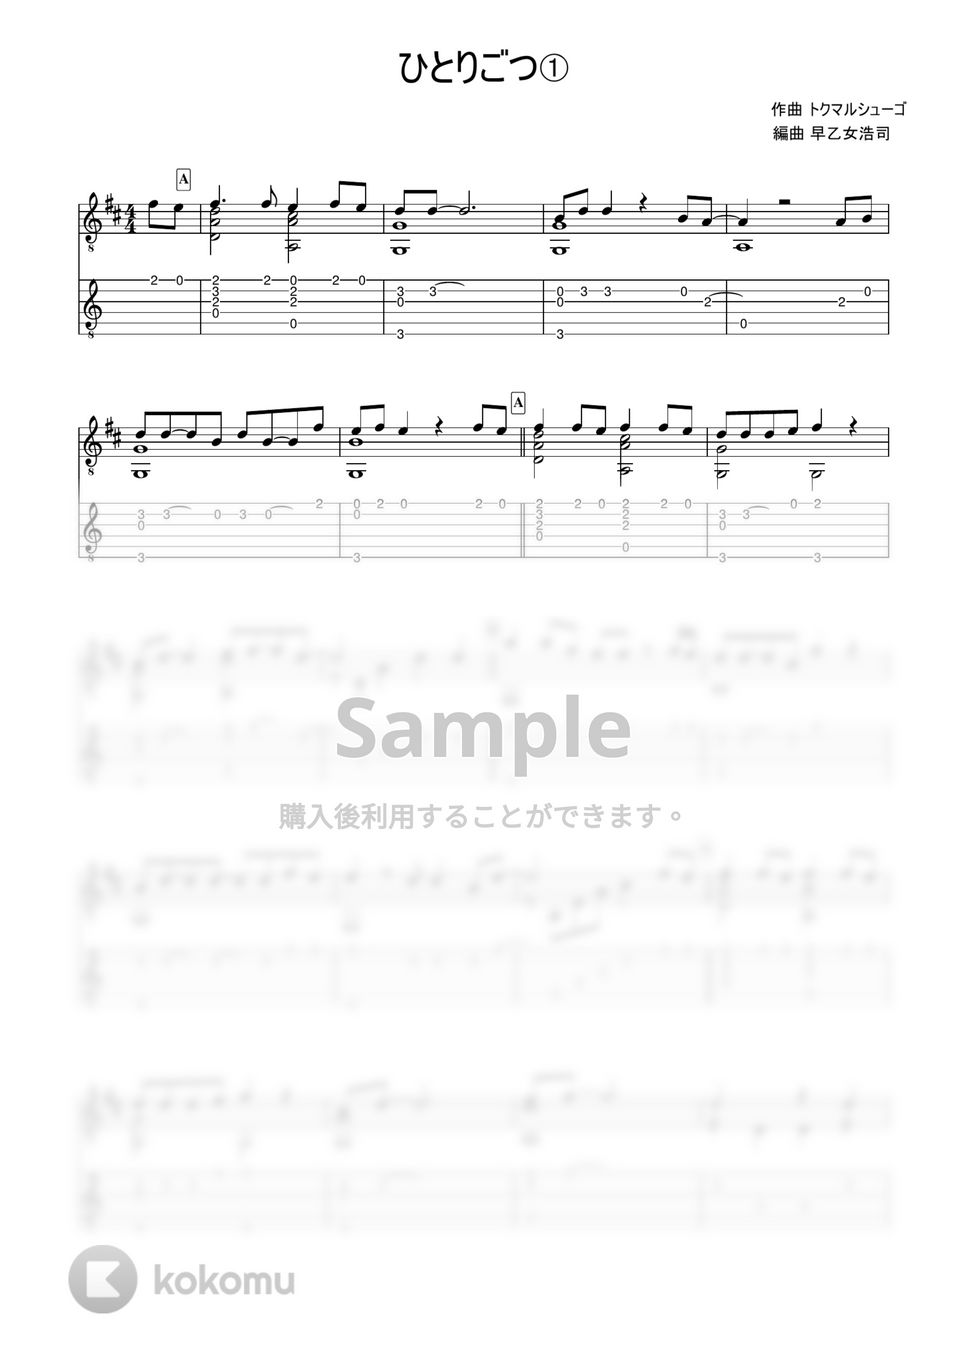 トクマルシューゴ - ひとりごつ (簡単ソロギター) by 早乙女浩司